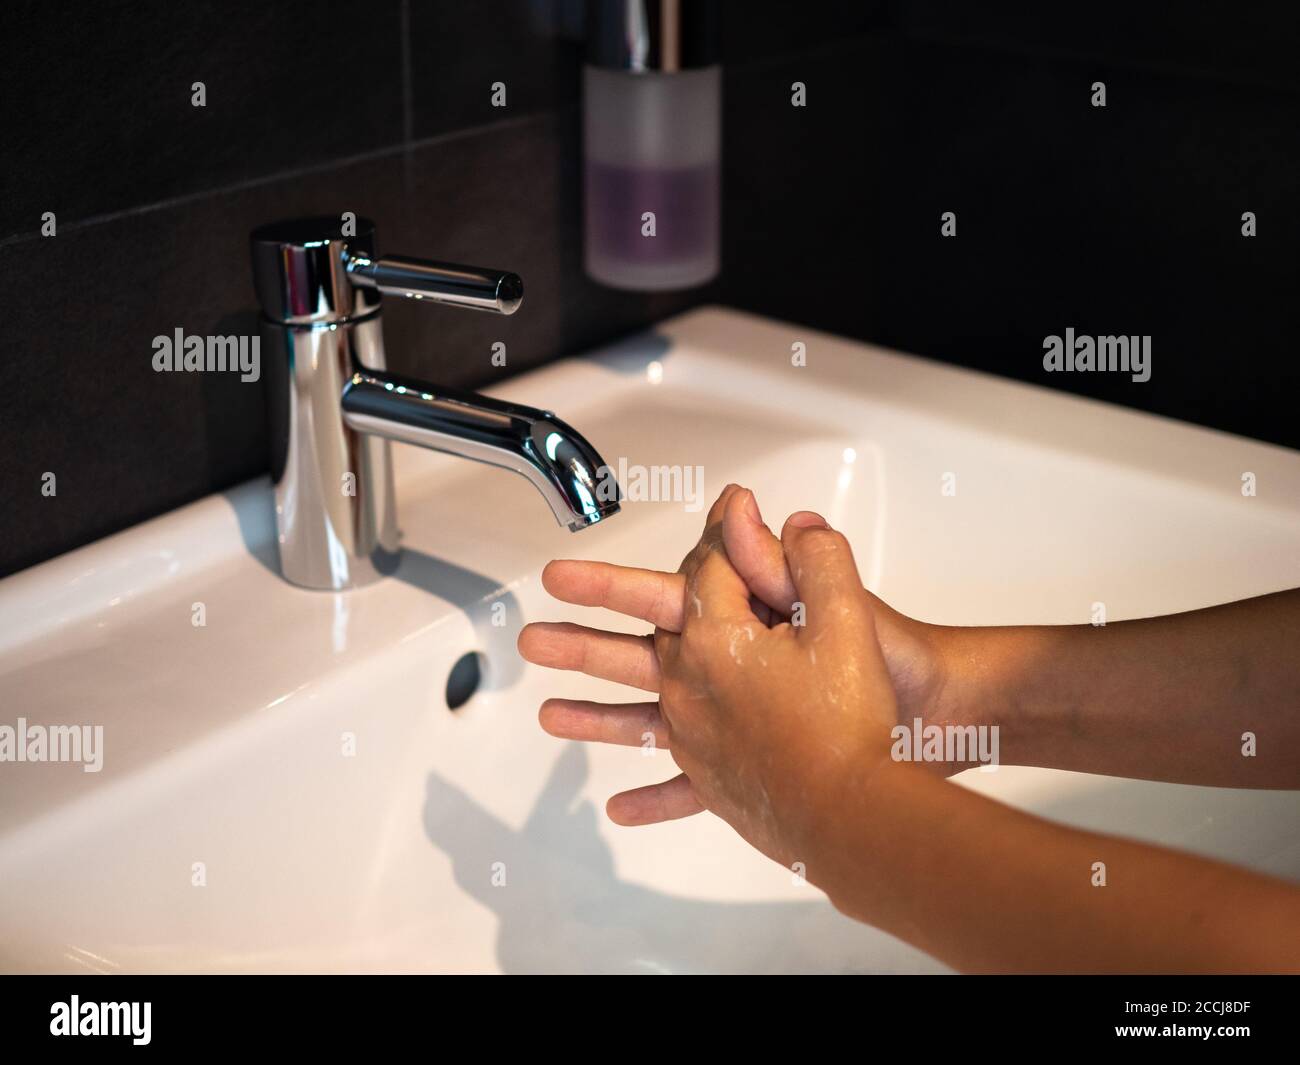 Lavado de manos higiene personal niño lavarse las manos frotar el jabón durante 20 segundos siguiendo los pasos, limpiar las muñecas y enjuagarse bajo el agua en el baño de la casa. Foto de stock